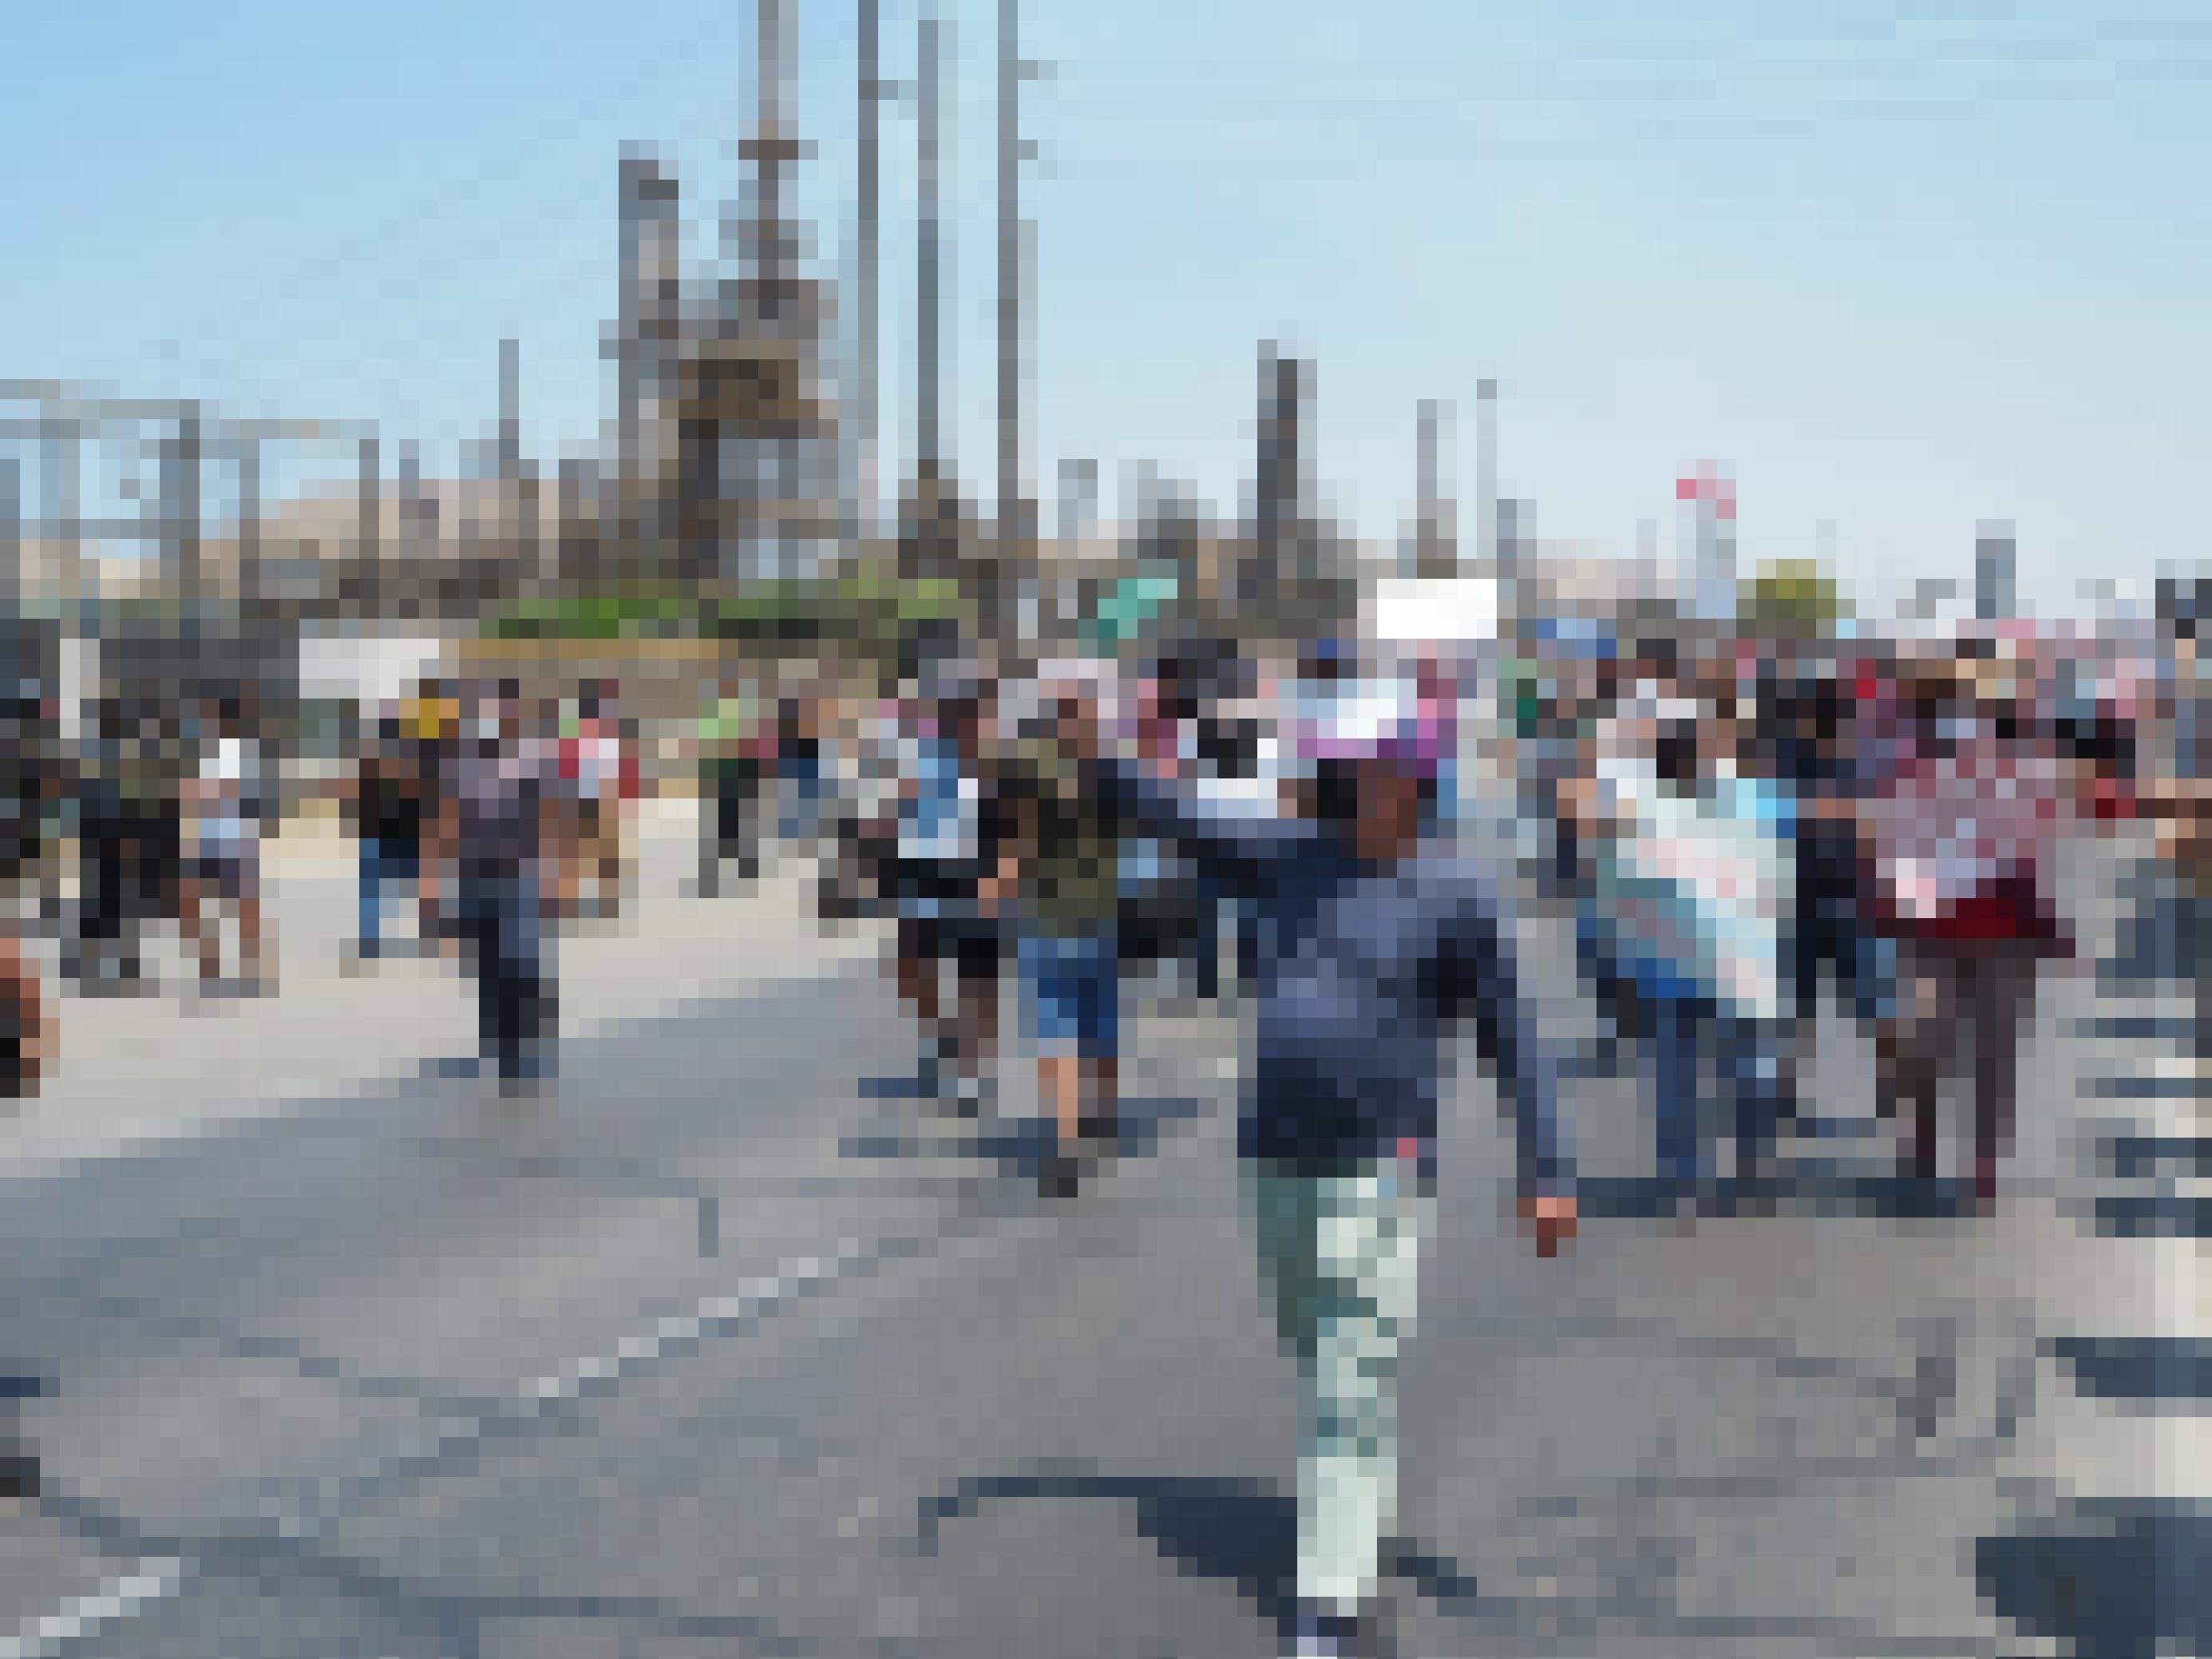 Menschen protestieren mit Plakaten auf einer Strasse, im Hintergrund sieht man eine Industrieanlage, eine Raffinerie.